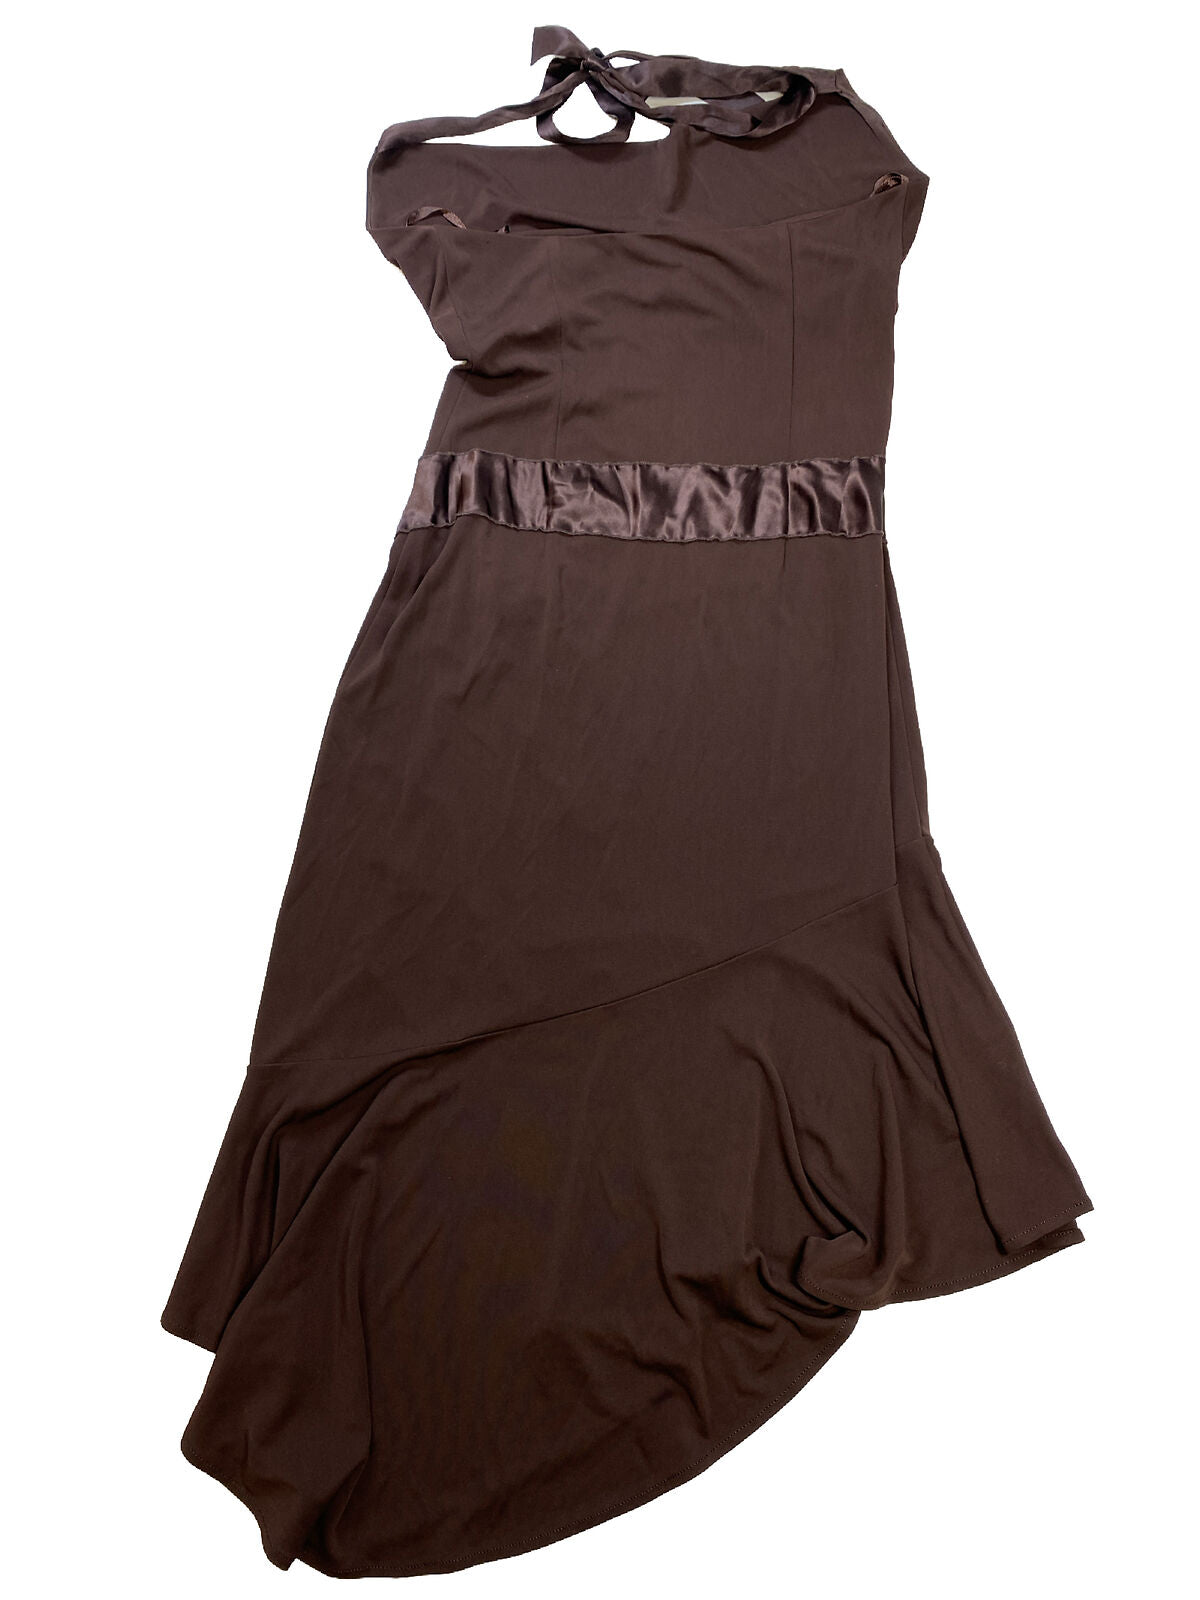 NUEVO Vestido asimétrico marrón con cuello halter de BCBGMaxazria para mujer - S